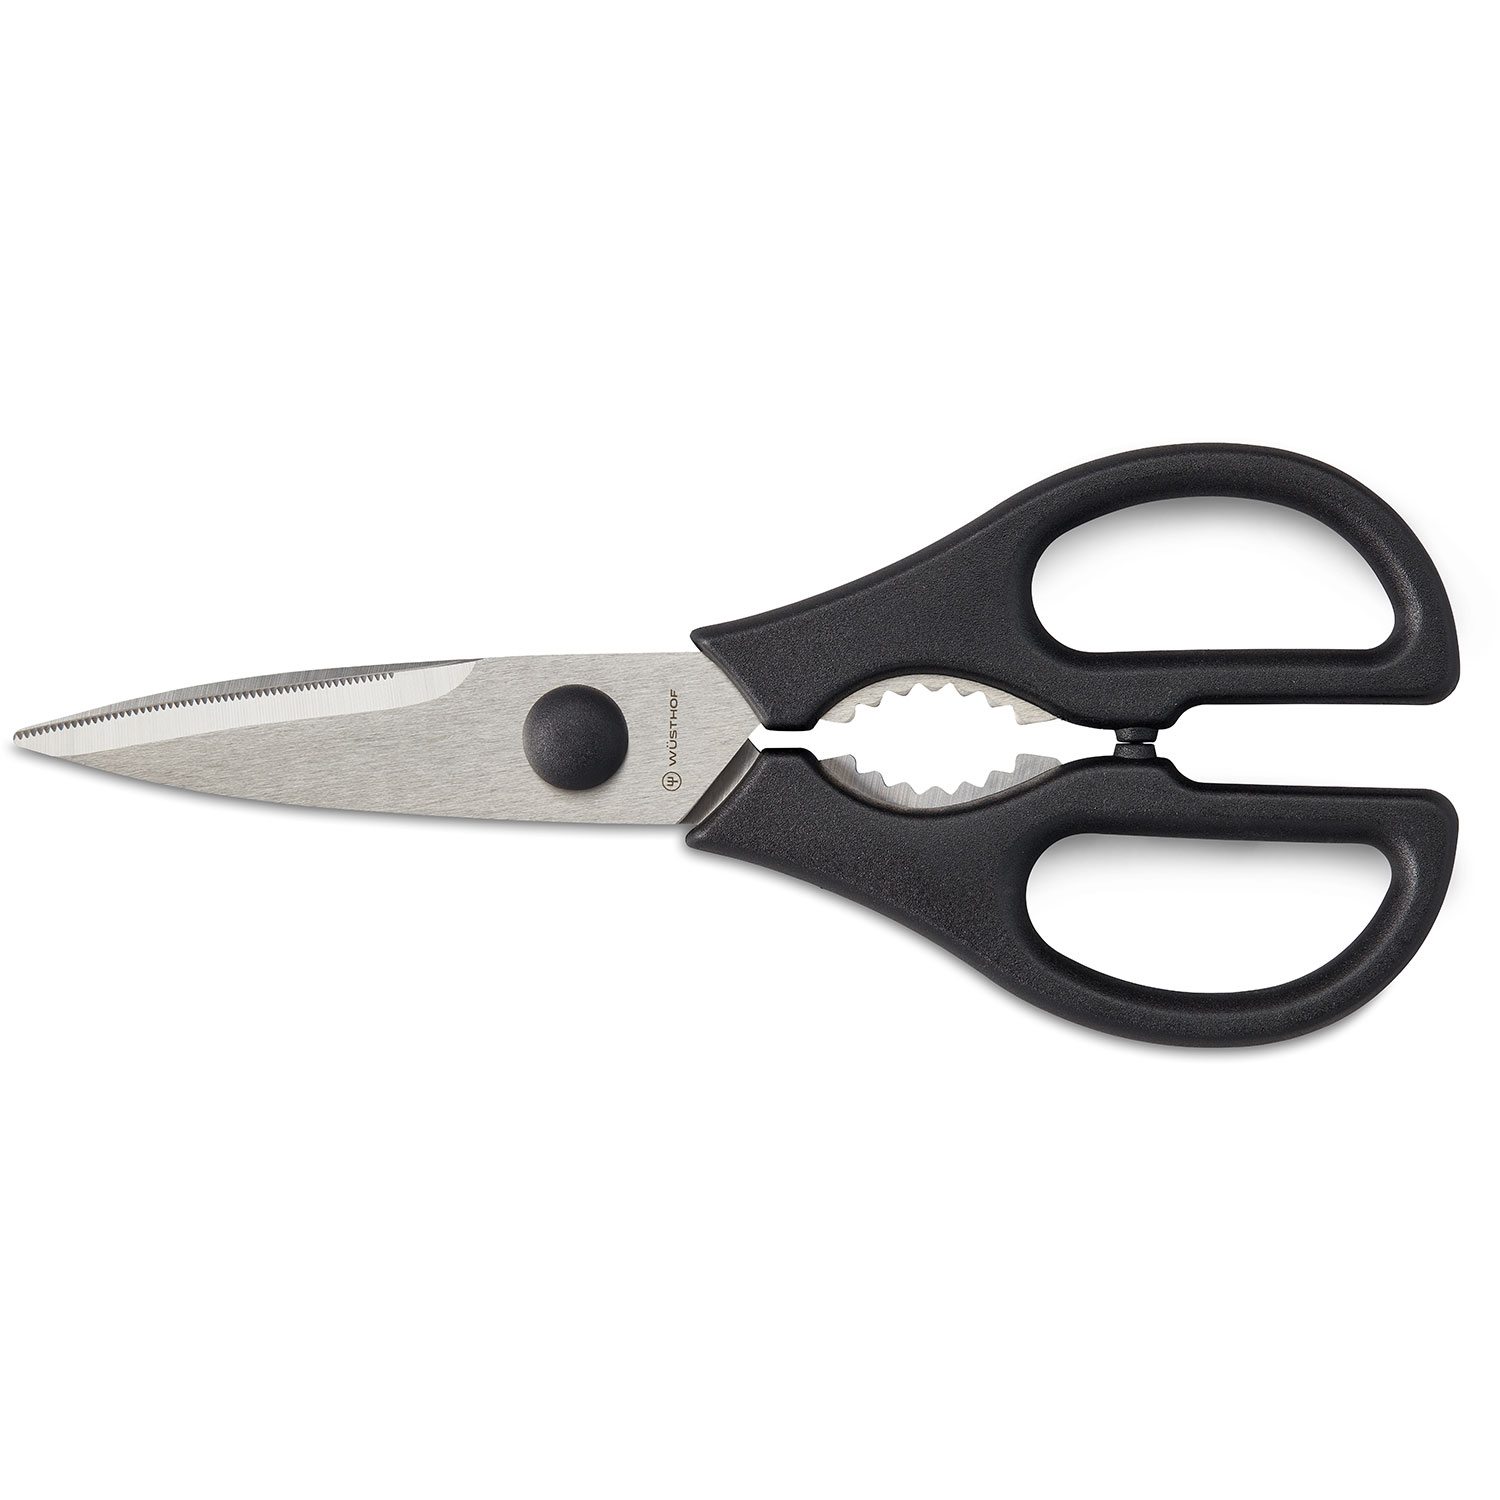 Classic Kitchen Scissors, Orange - Fiskars @ RoyalDesign